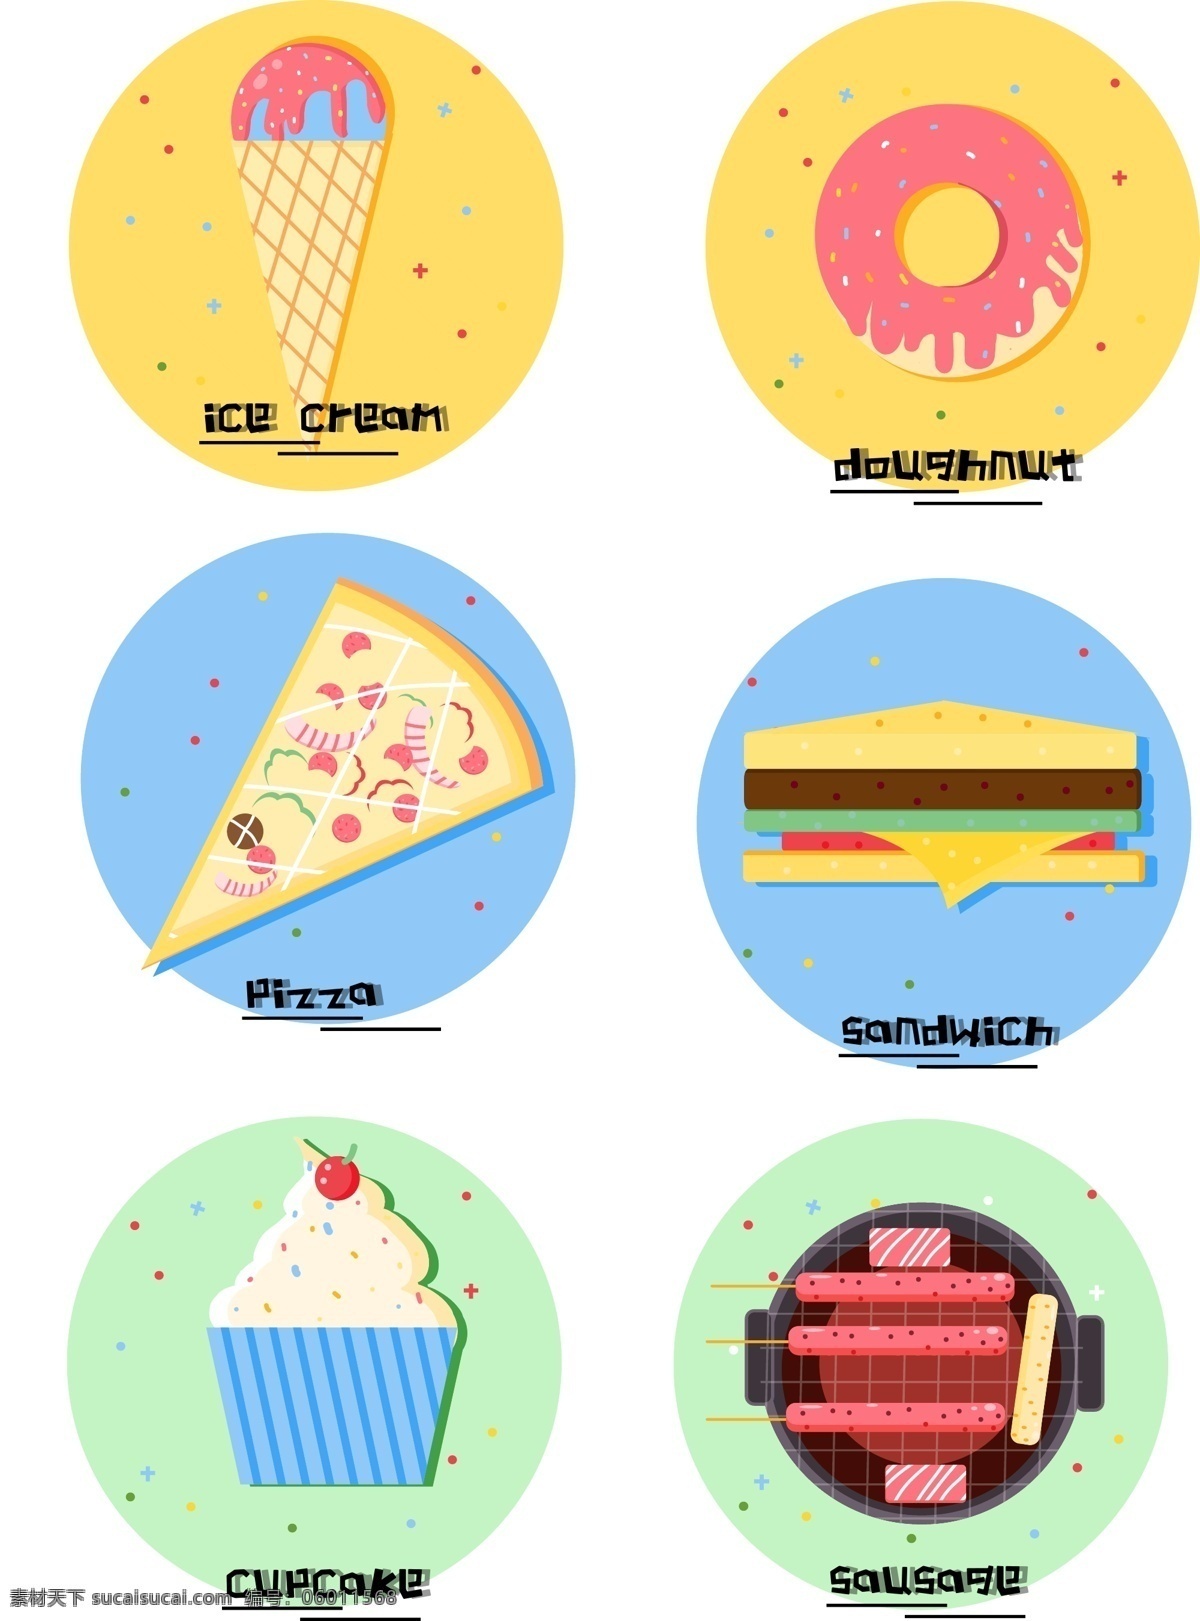 矢量 卡通 简约 食物 美食 冰淇淋 披萨 蛋糕 甜甜圈 三明治 杯子蛋糕 香肠 烤肠